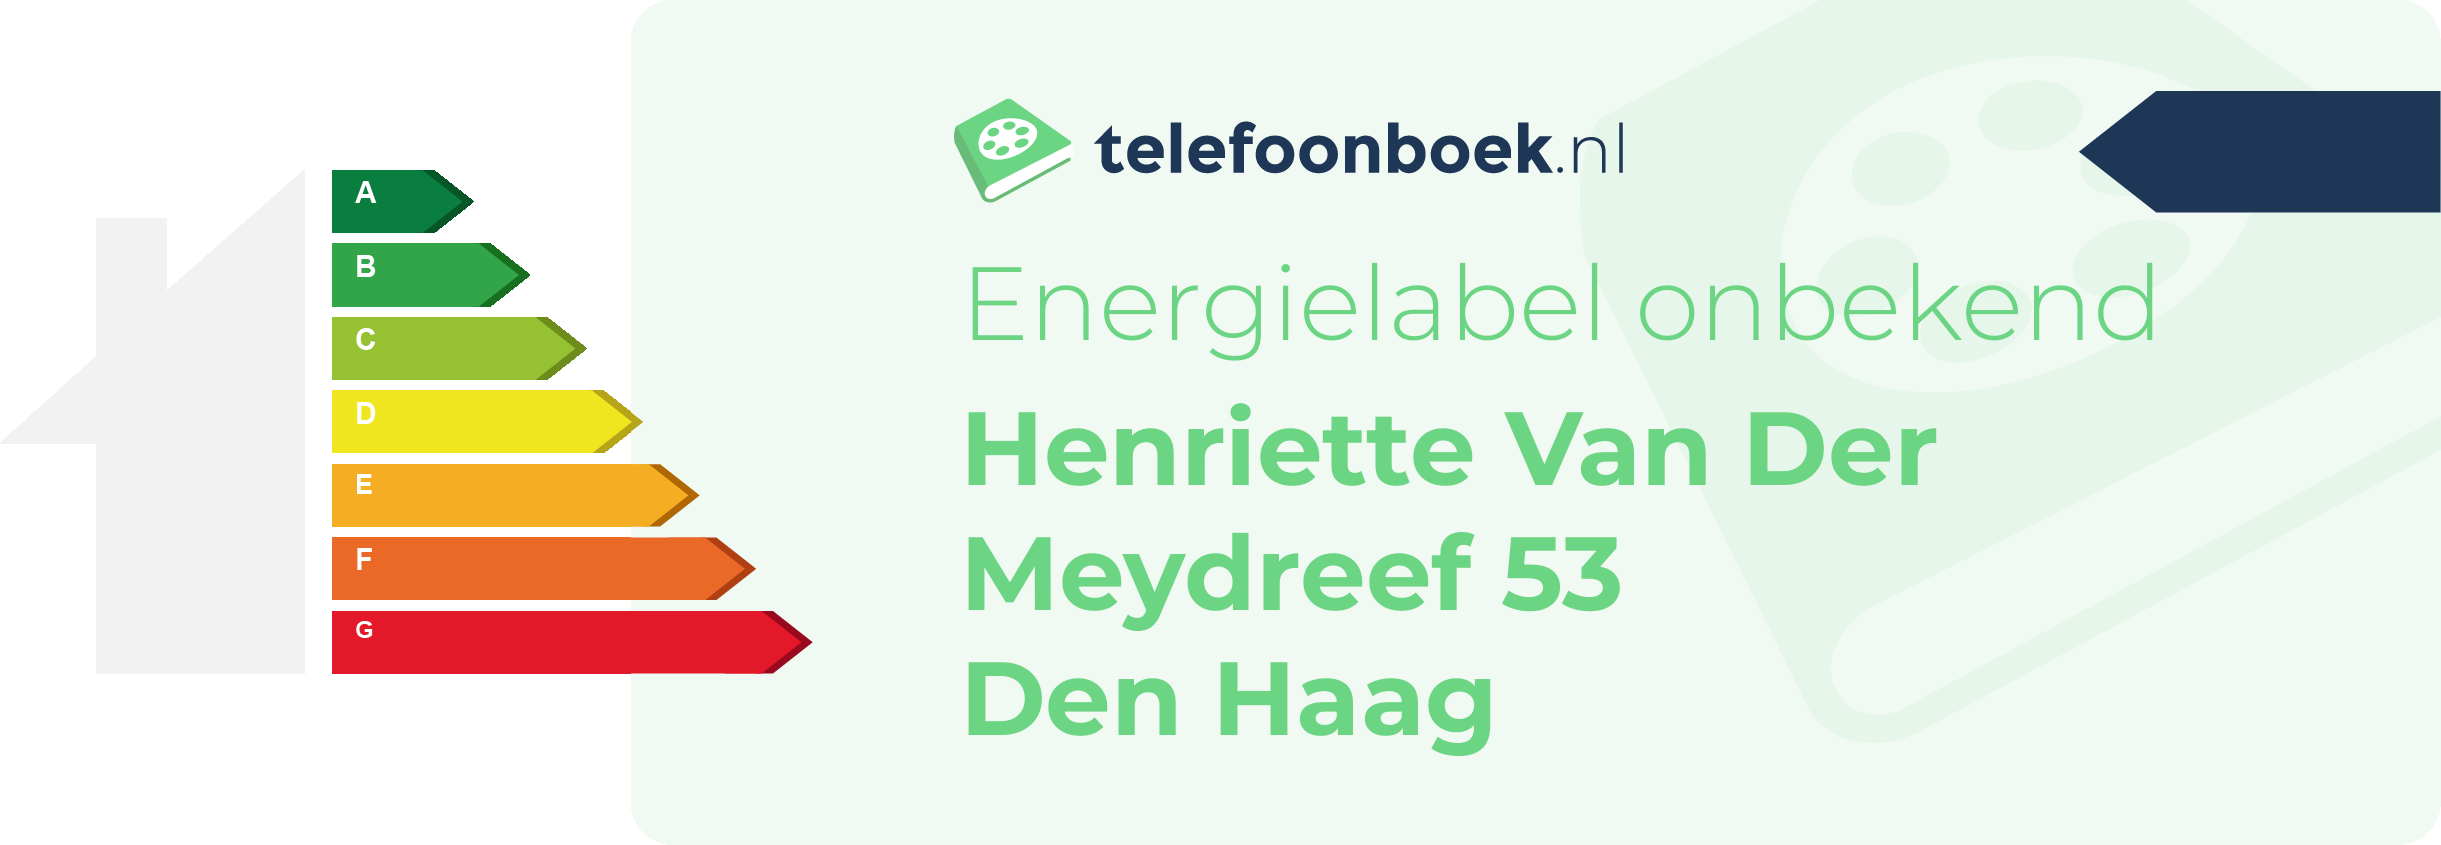 Energielabel Henriette Van Der Meydreef 53 Den Haag